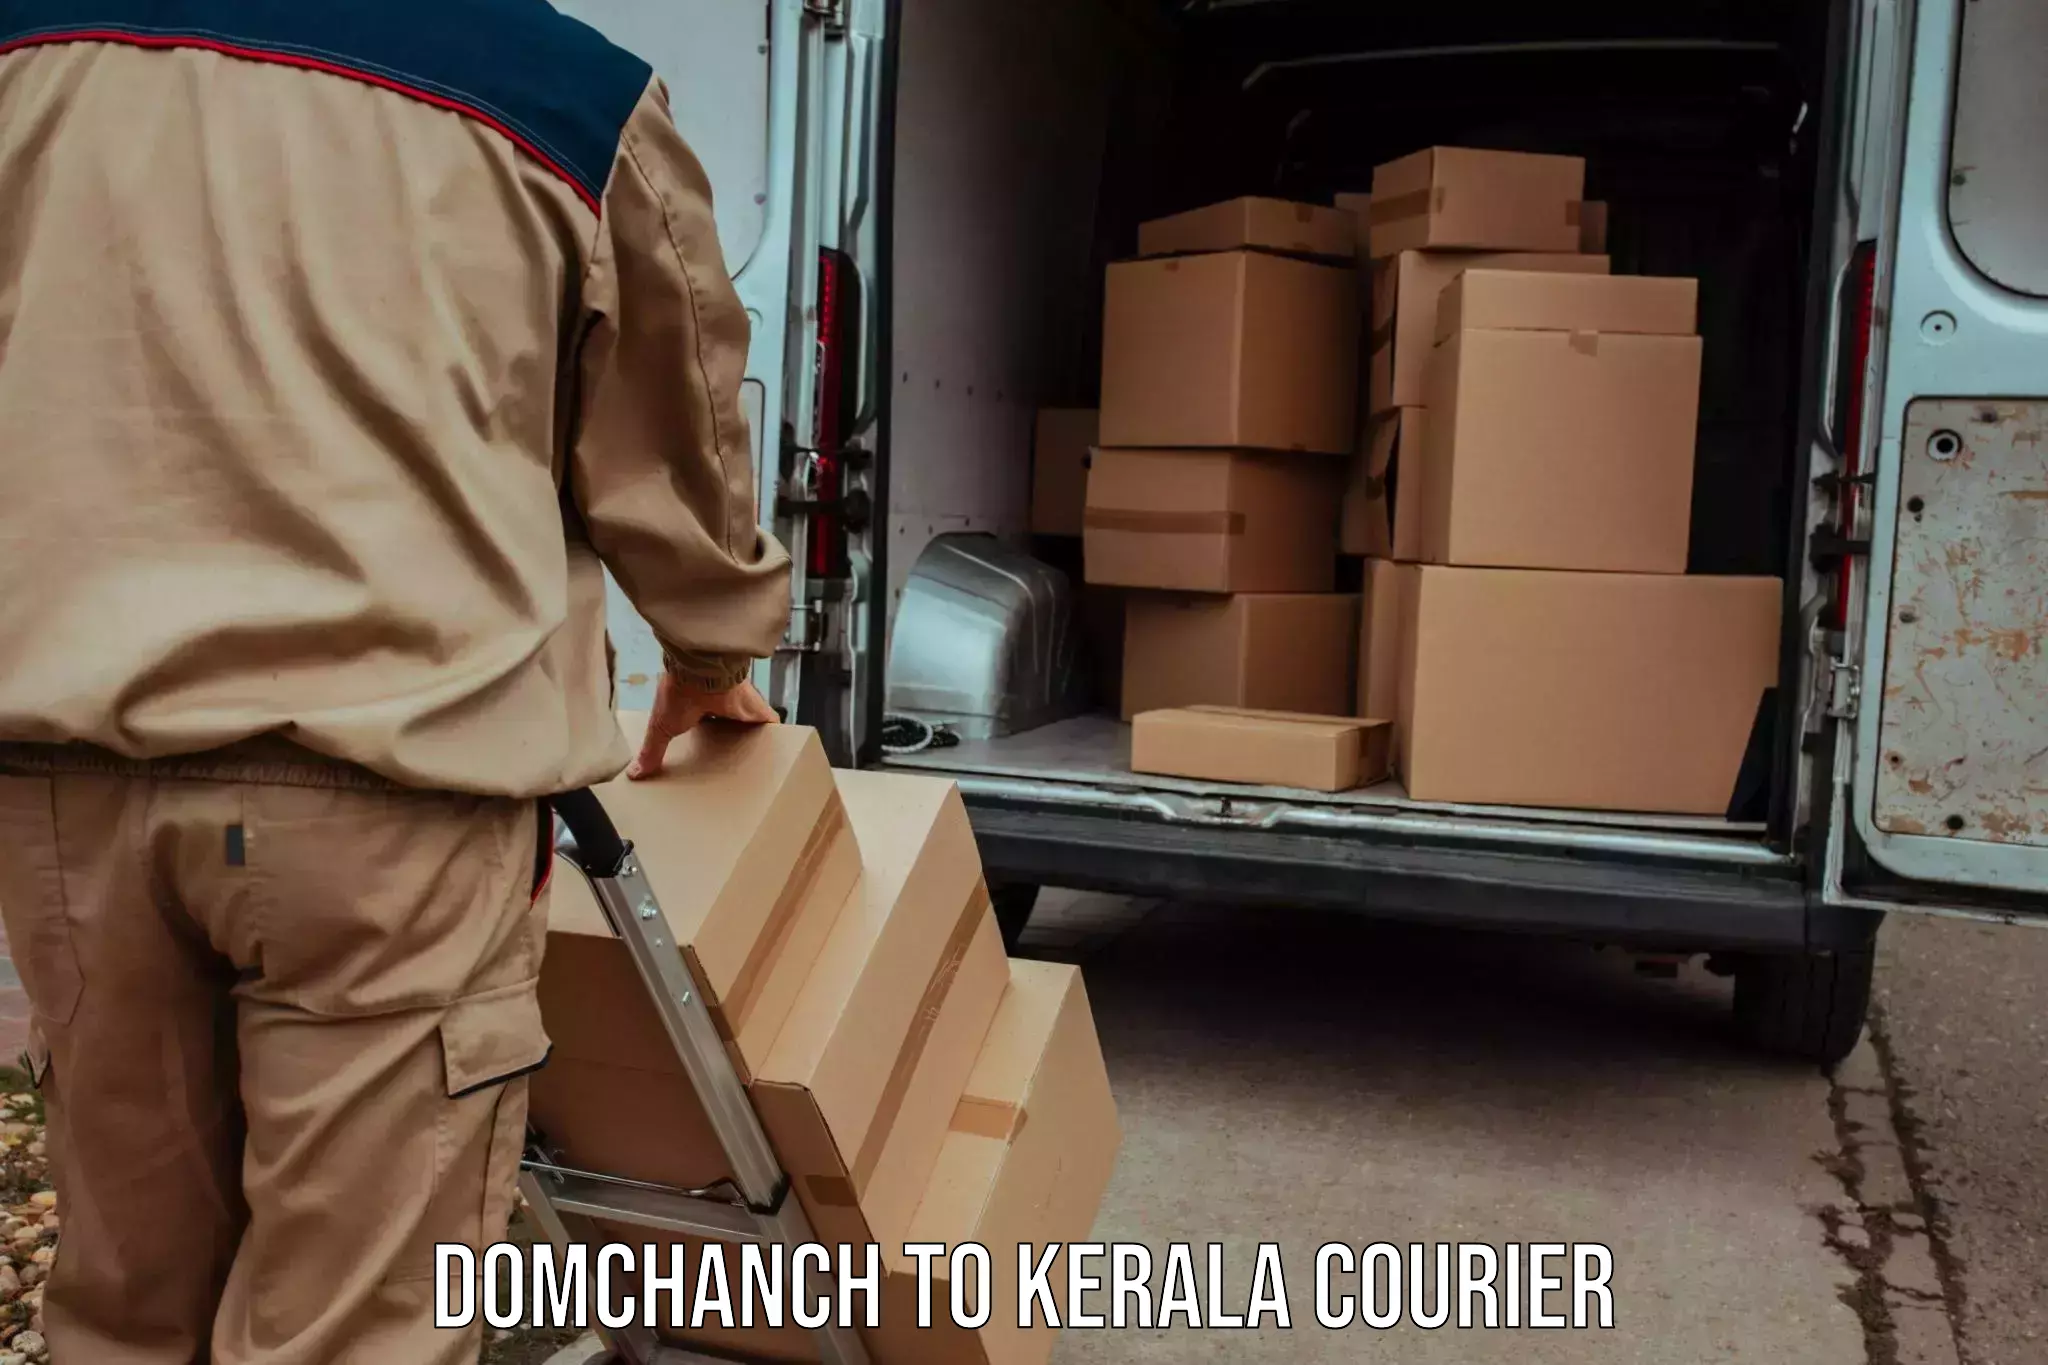 Digital courier platforms Domchanch to Kochi